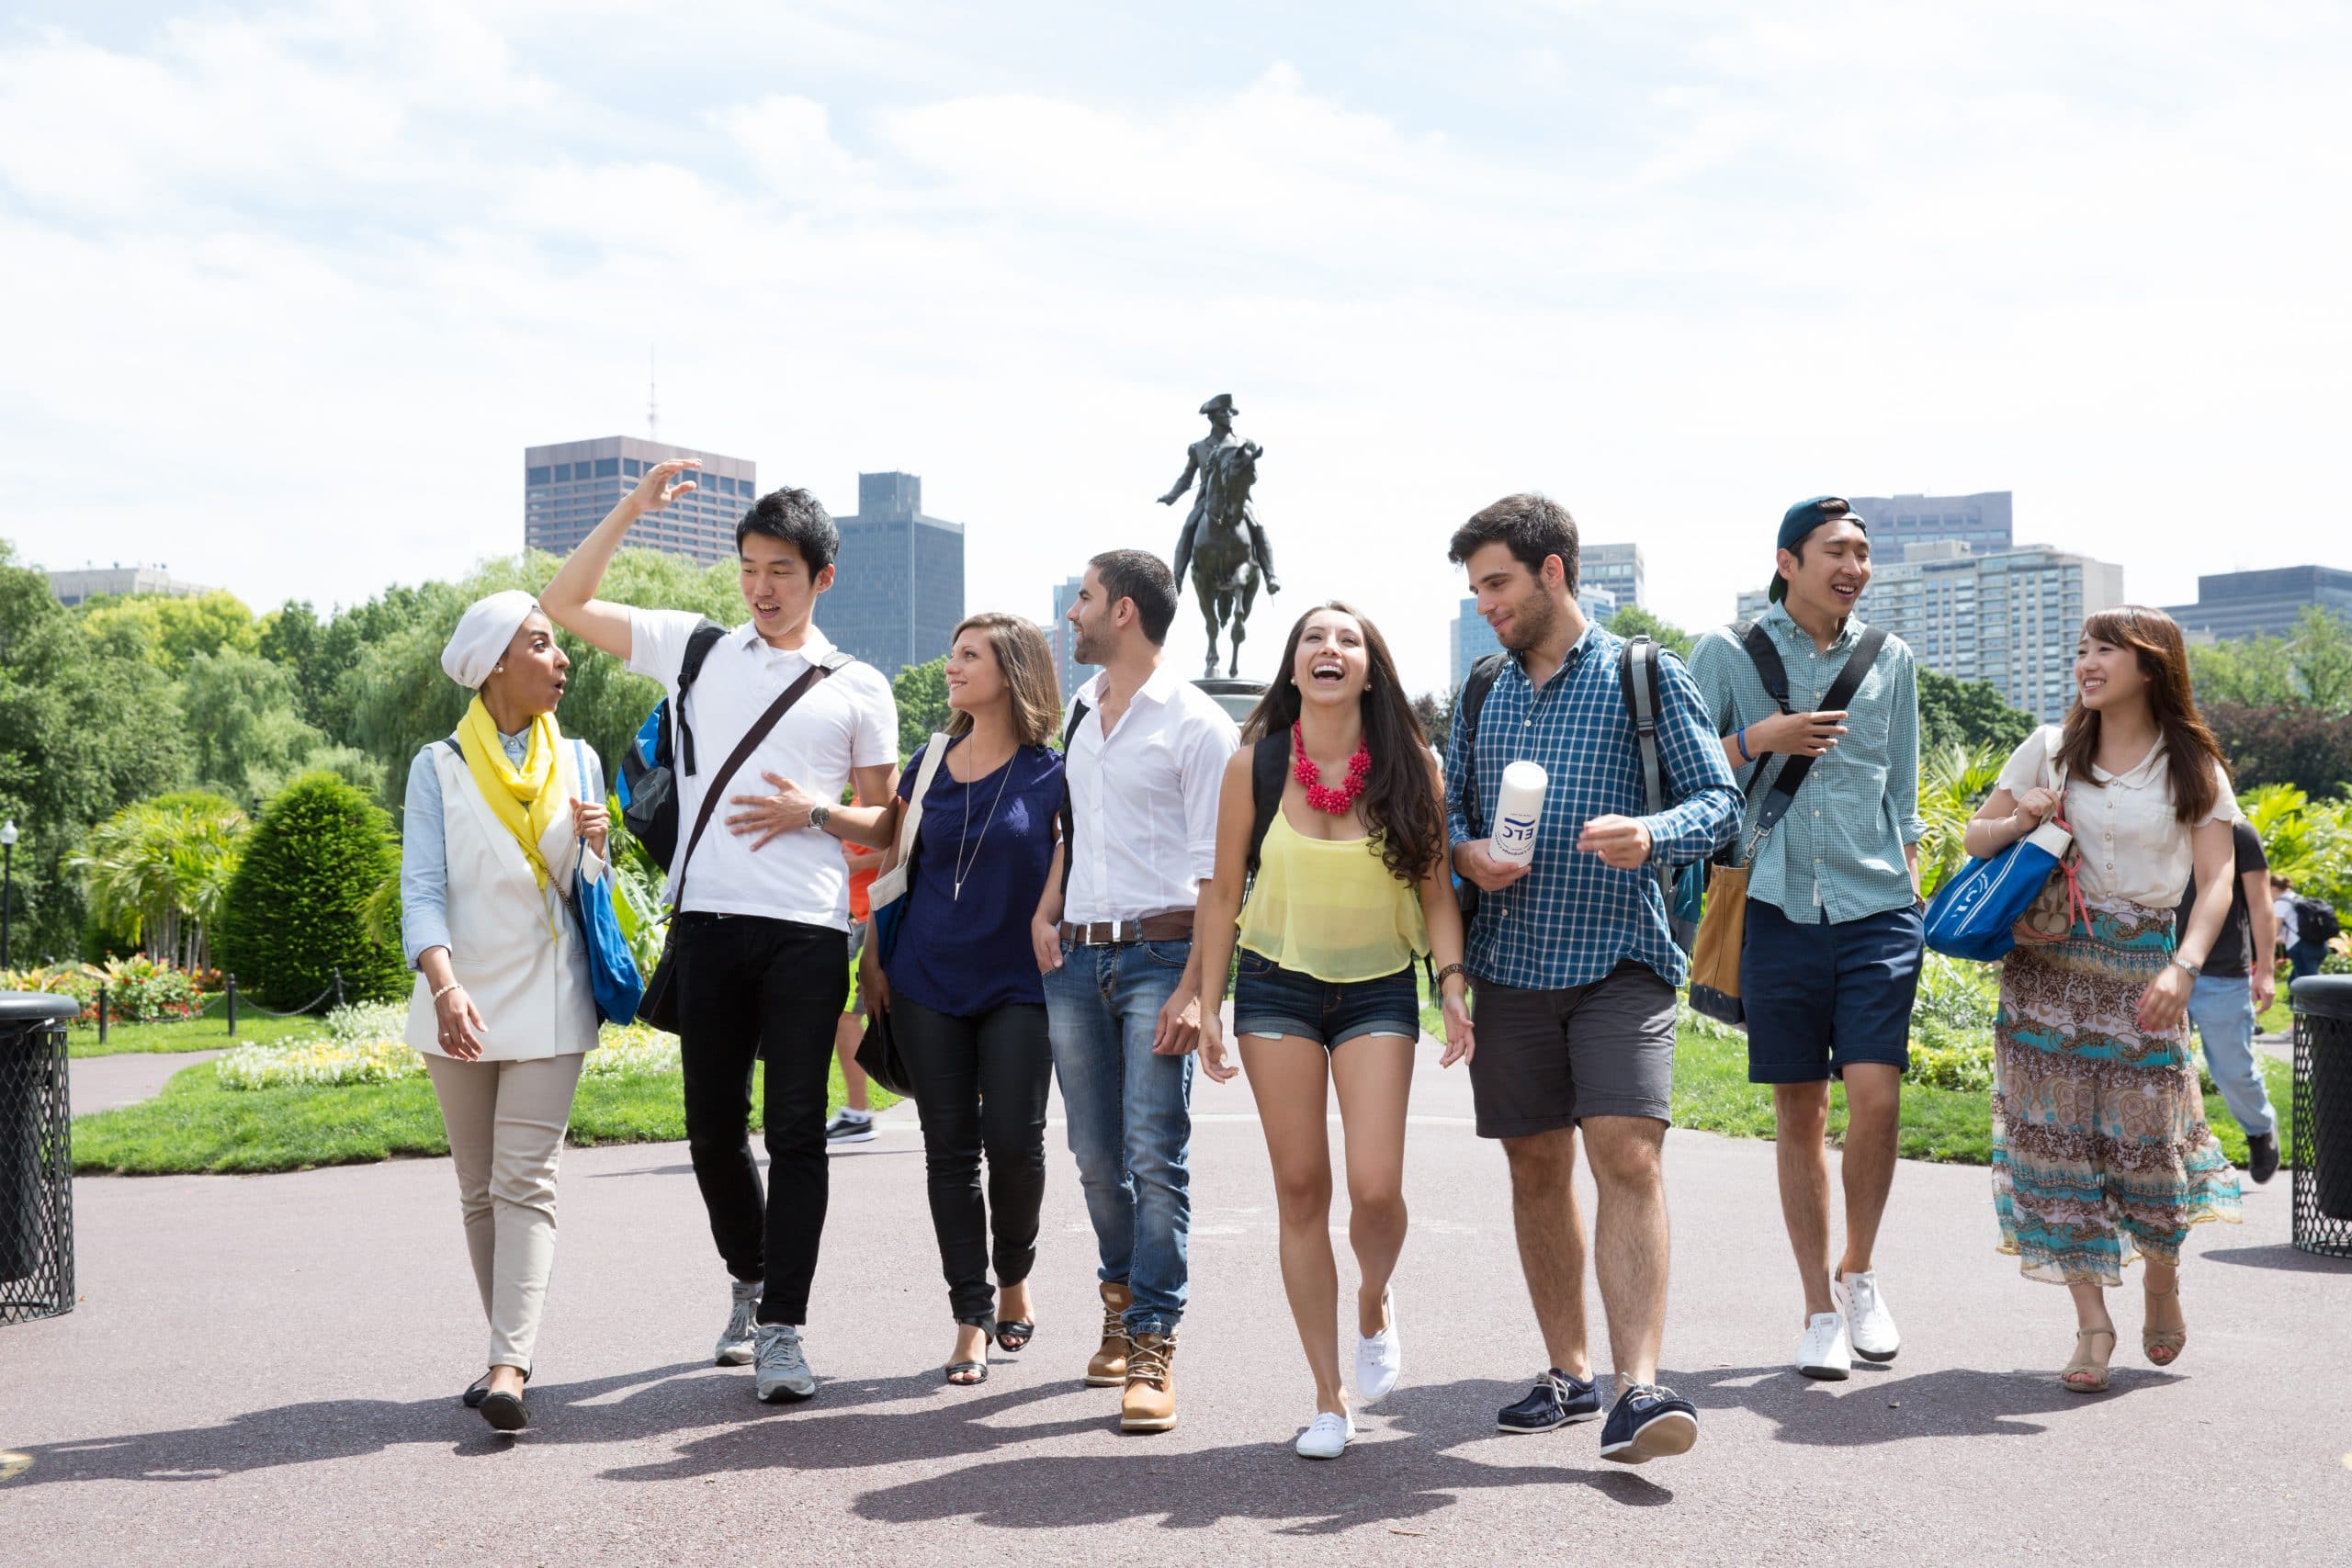 Etudiants visitant Boston lors de leur séjour linguistique aux USA